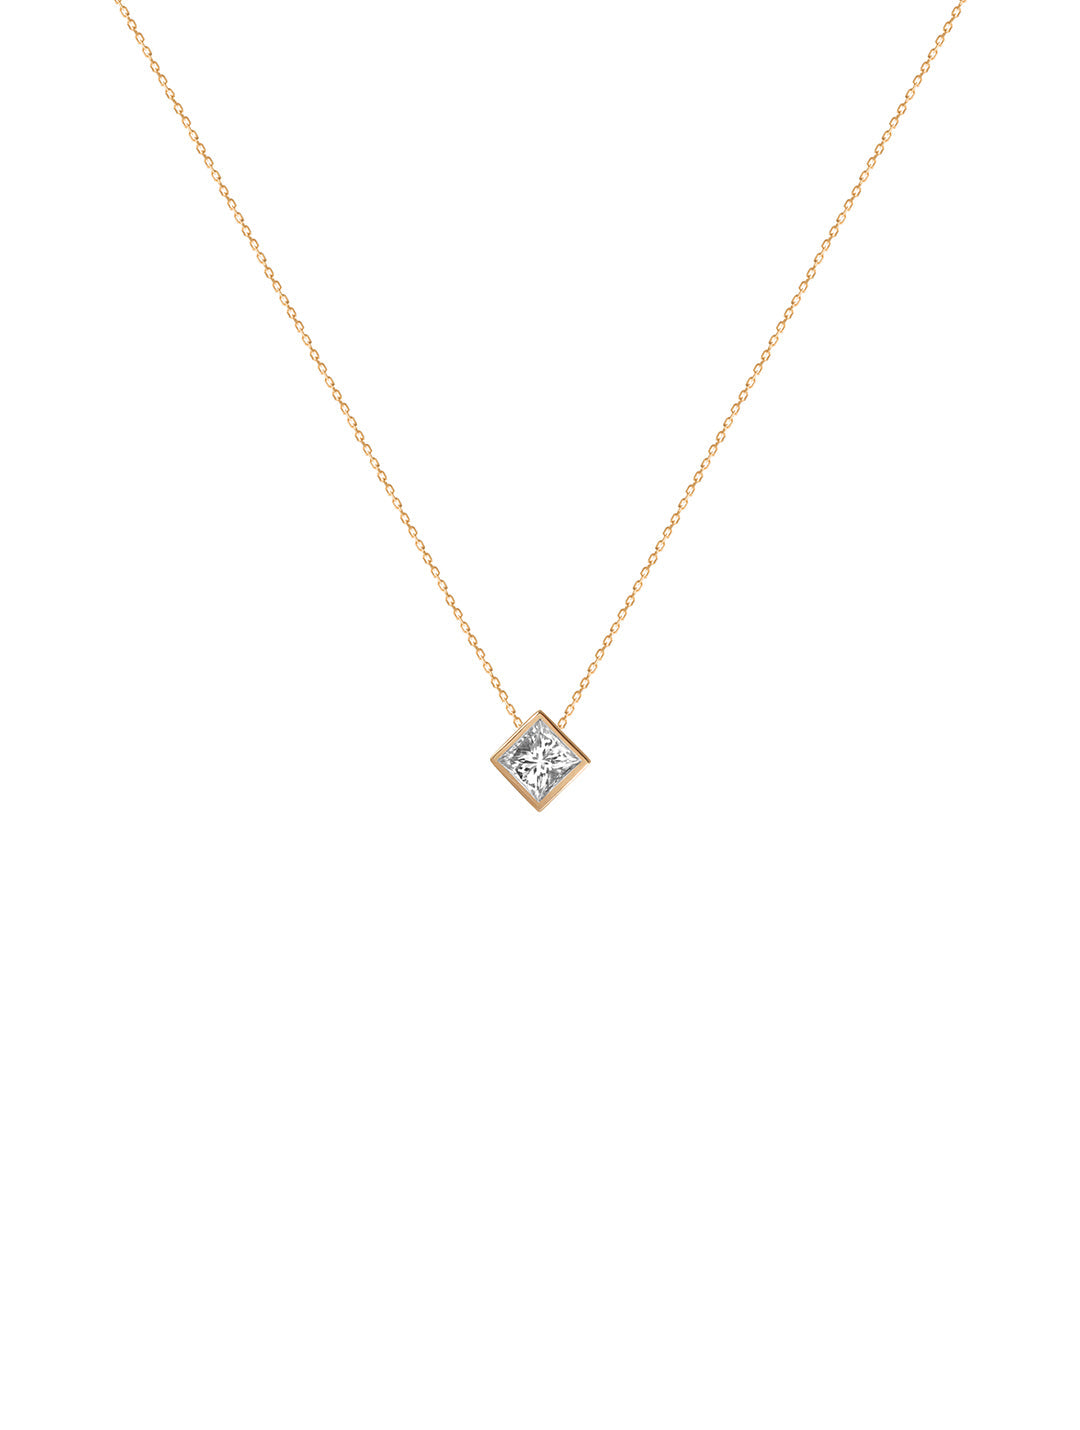 Princessa Cut Diamond Necklace